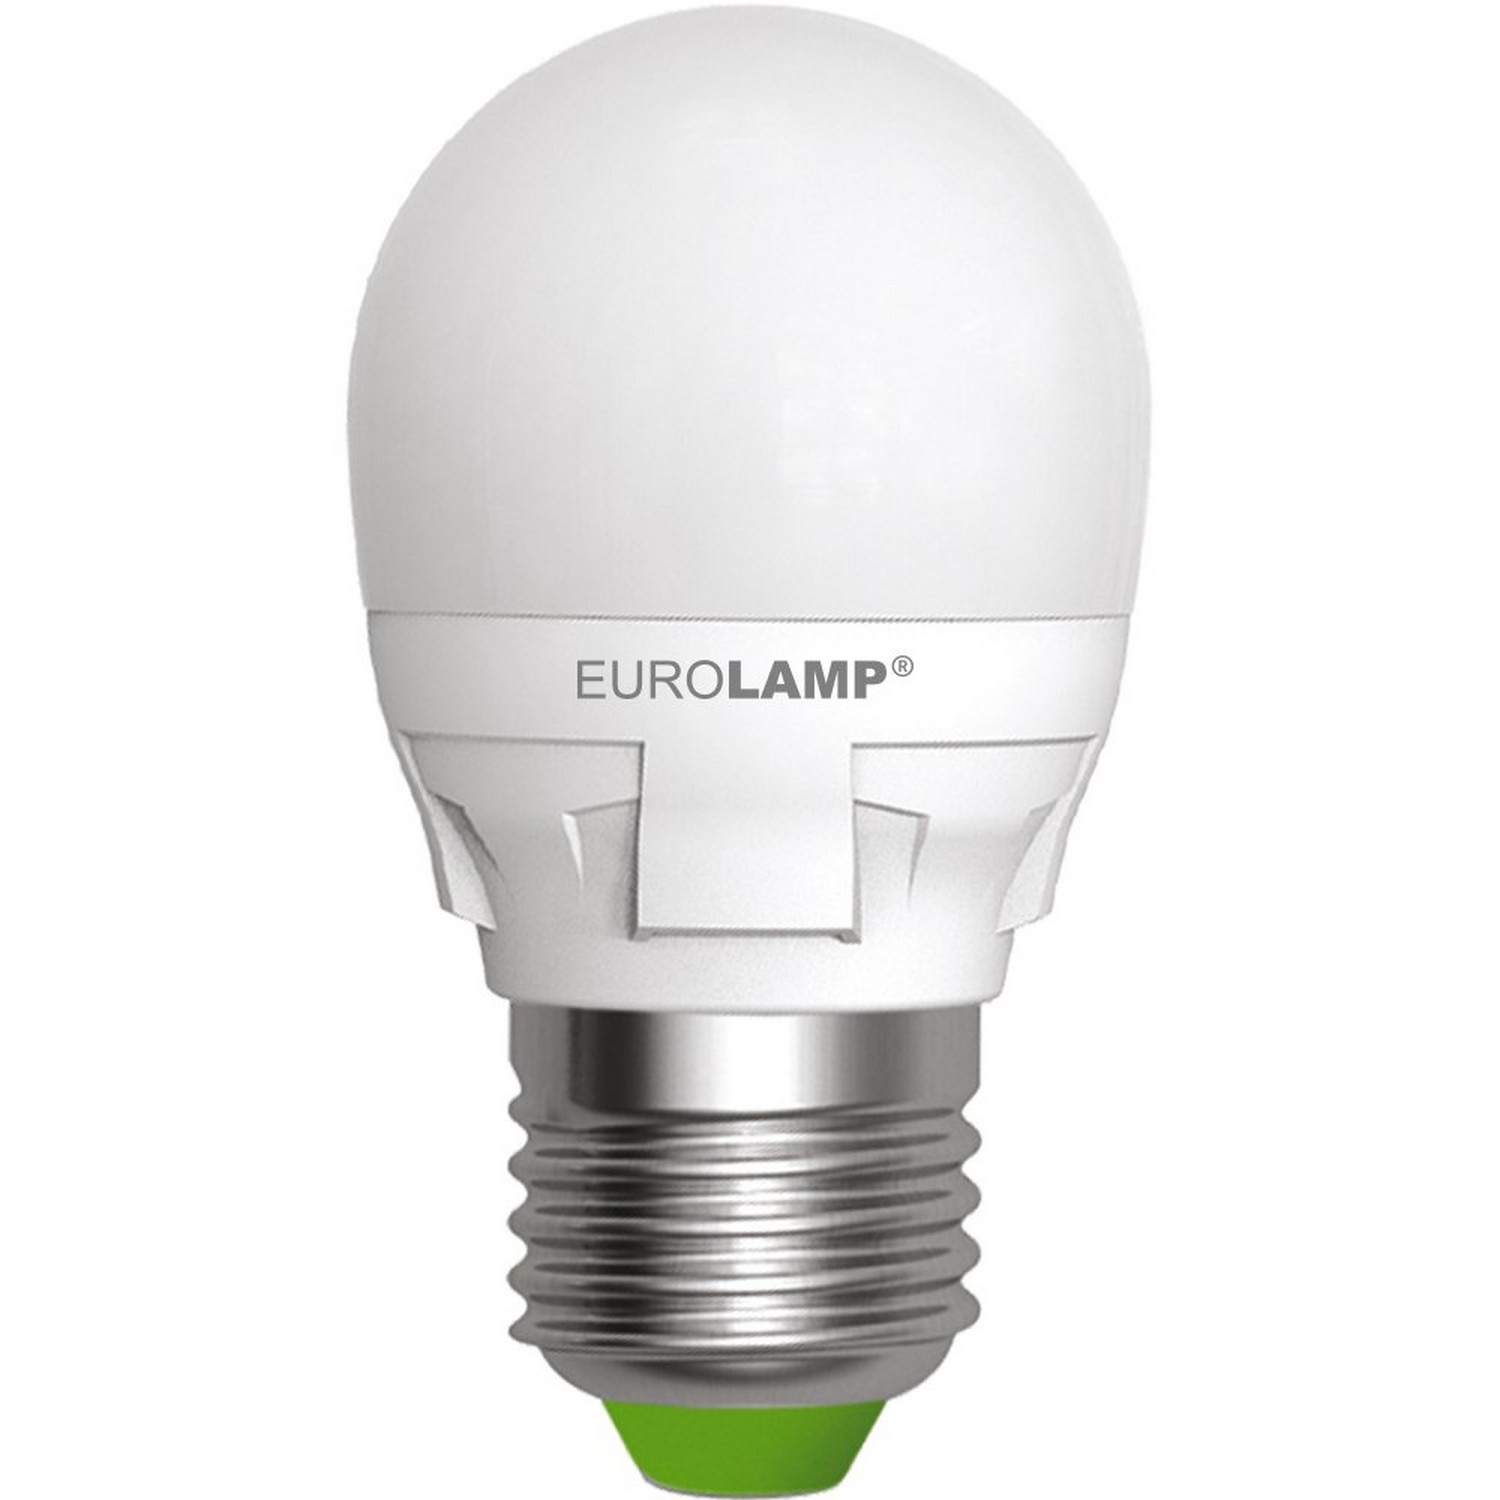 в продаже Лампа Eurolamp LED TURBO NEW dimmable G45 5W E27 4000K - фото 3